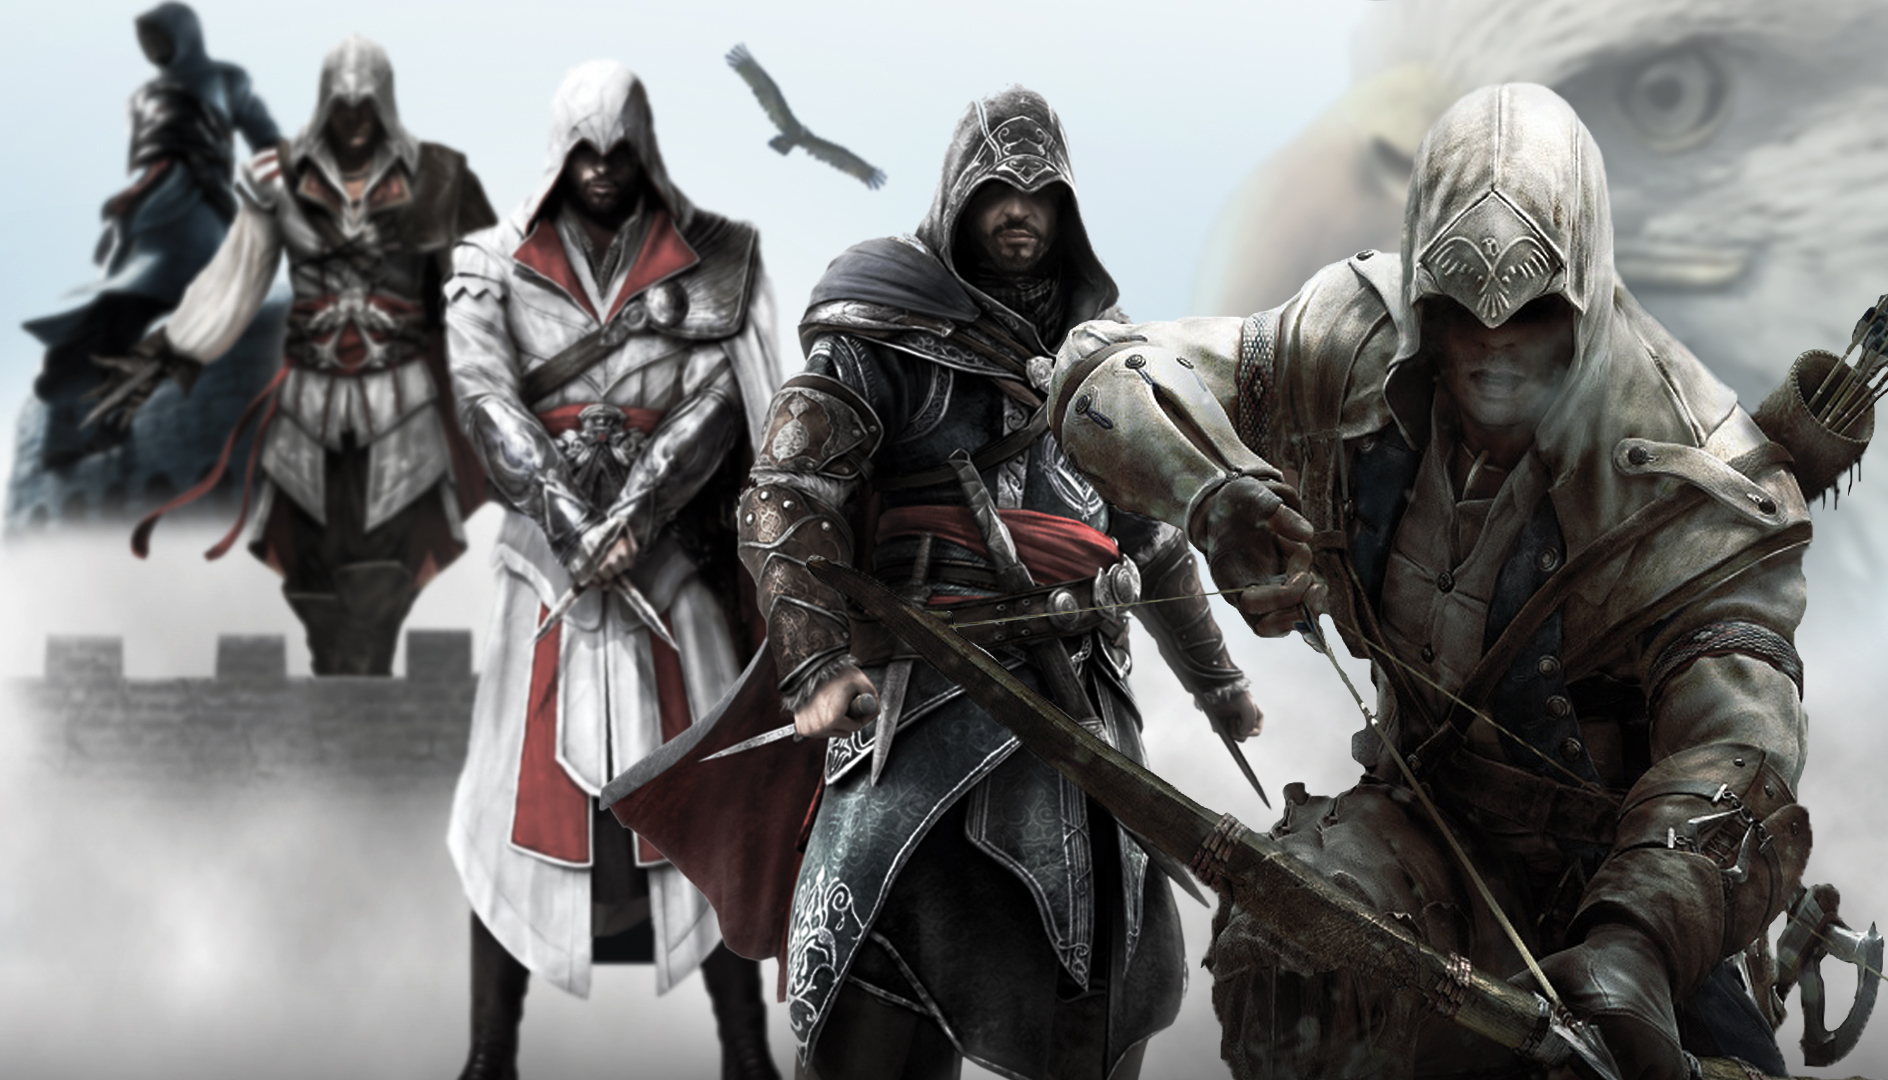 مروری بر تمام نسخه های بازی  Assassin's Creed؛ در تاریکی می جنگیم تابه روشنایی خدمت کنیم